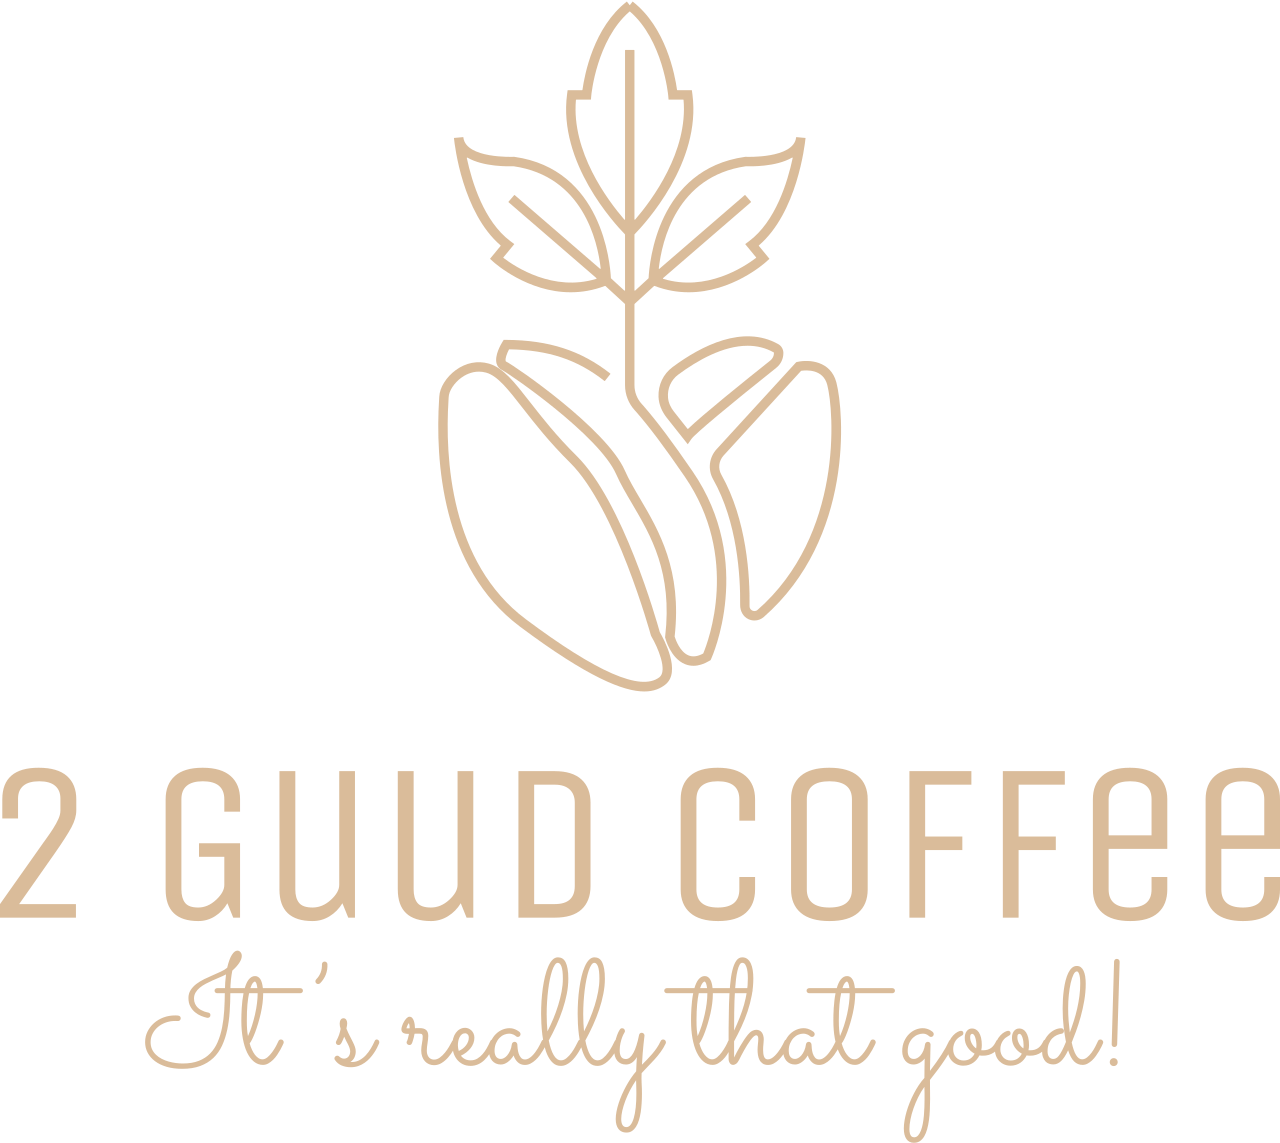 2 Guud Coffee's web page